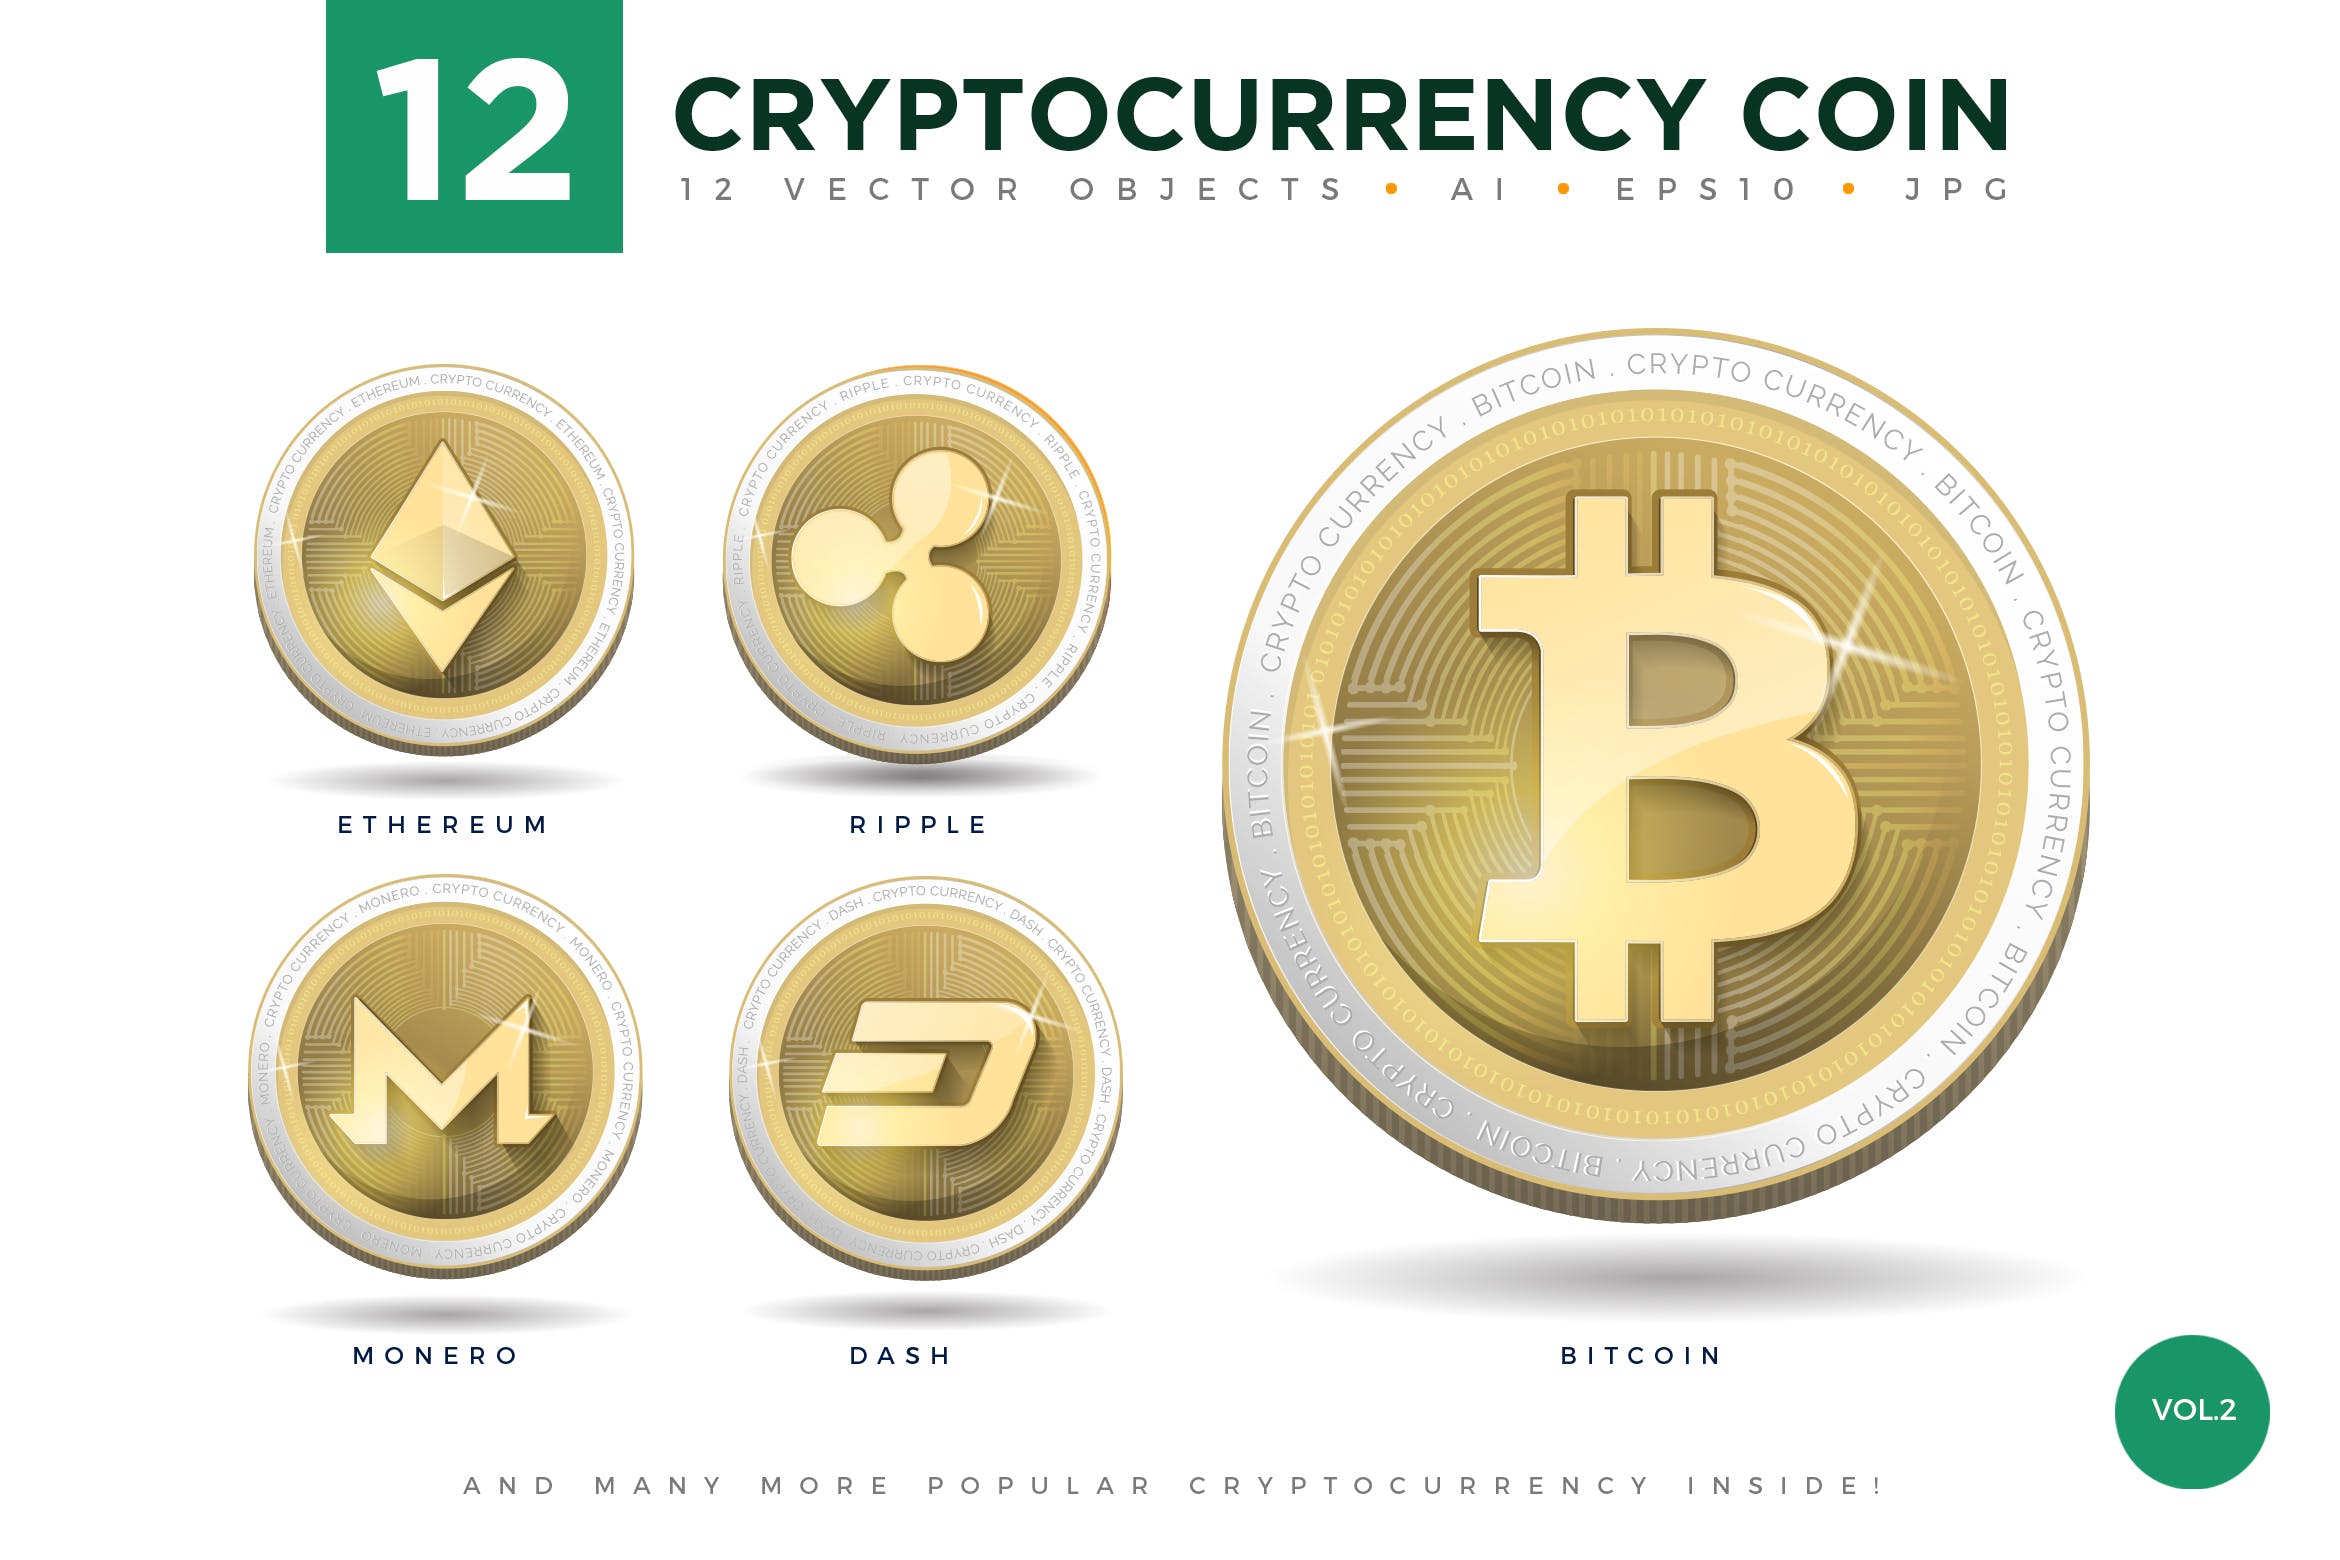 12枚加密货币主题硬币形状矢量亿图网易图库精选图标合集v2 12 Crypto Currency Coin Vector Illustration Set 2插图